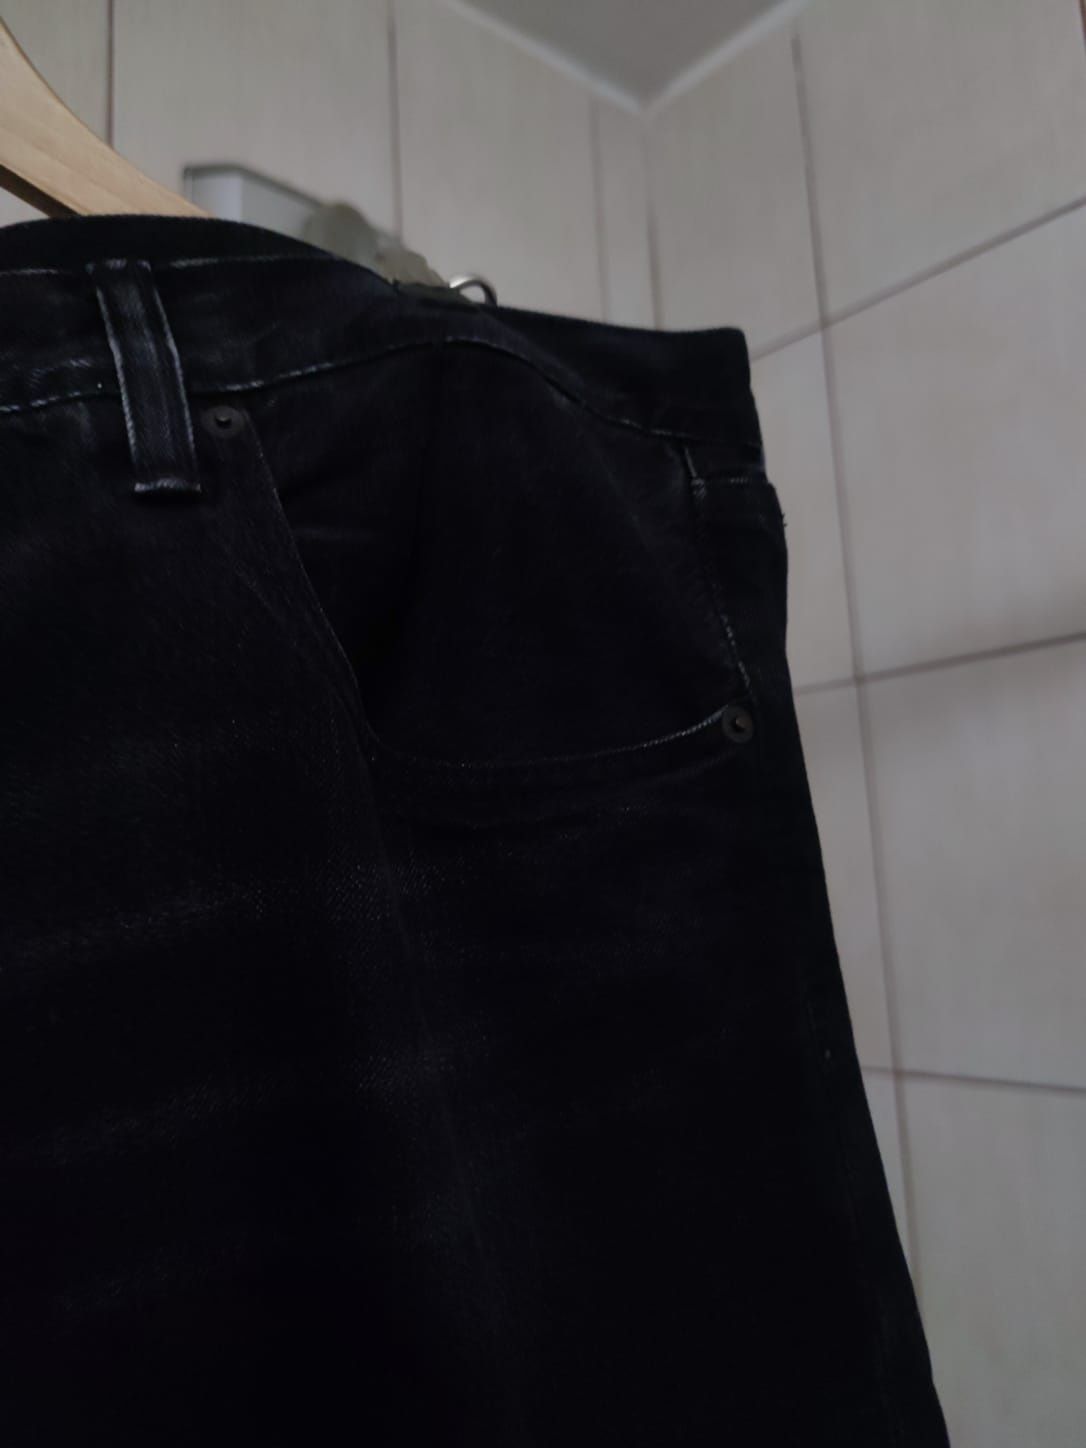 Spodnie jeansowe jeansy Levi's Strauss czarne ciemne 501 w 38 l 34 bla